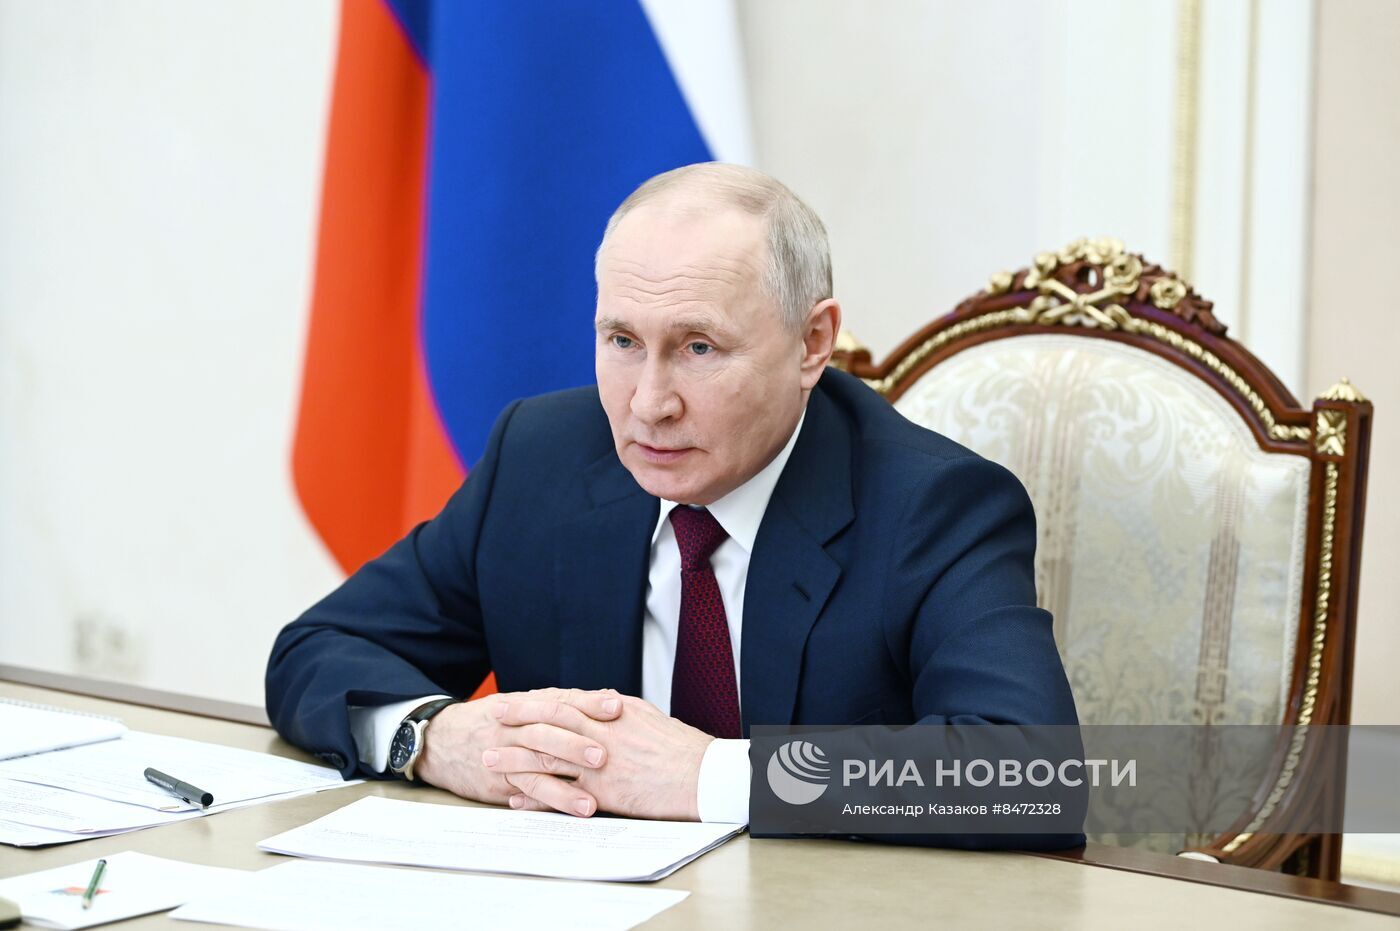 بوتين: عدة دول تحاول خلق صعوبات أمام روسيا لكنها لم ولن تنجح